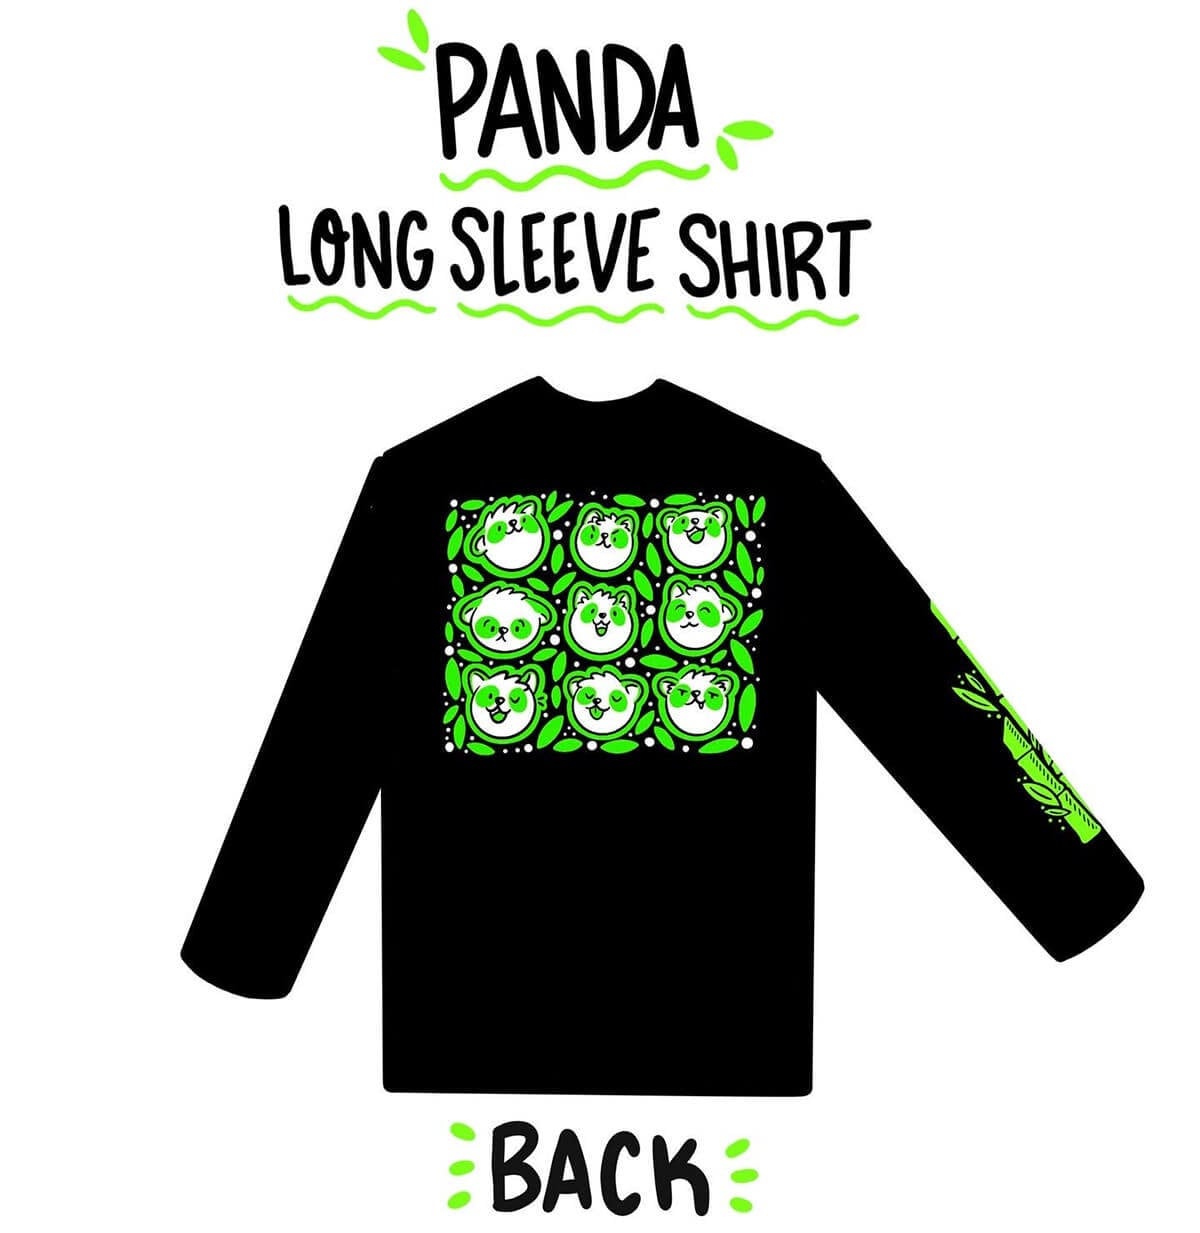 Panda Long Sleeve Shirt